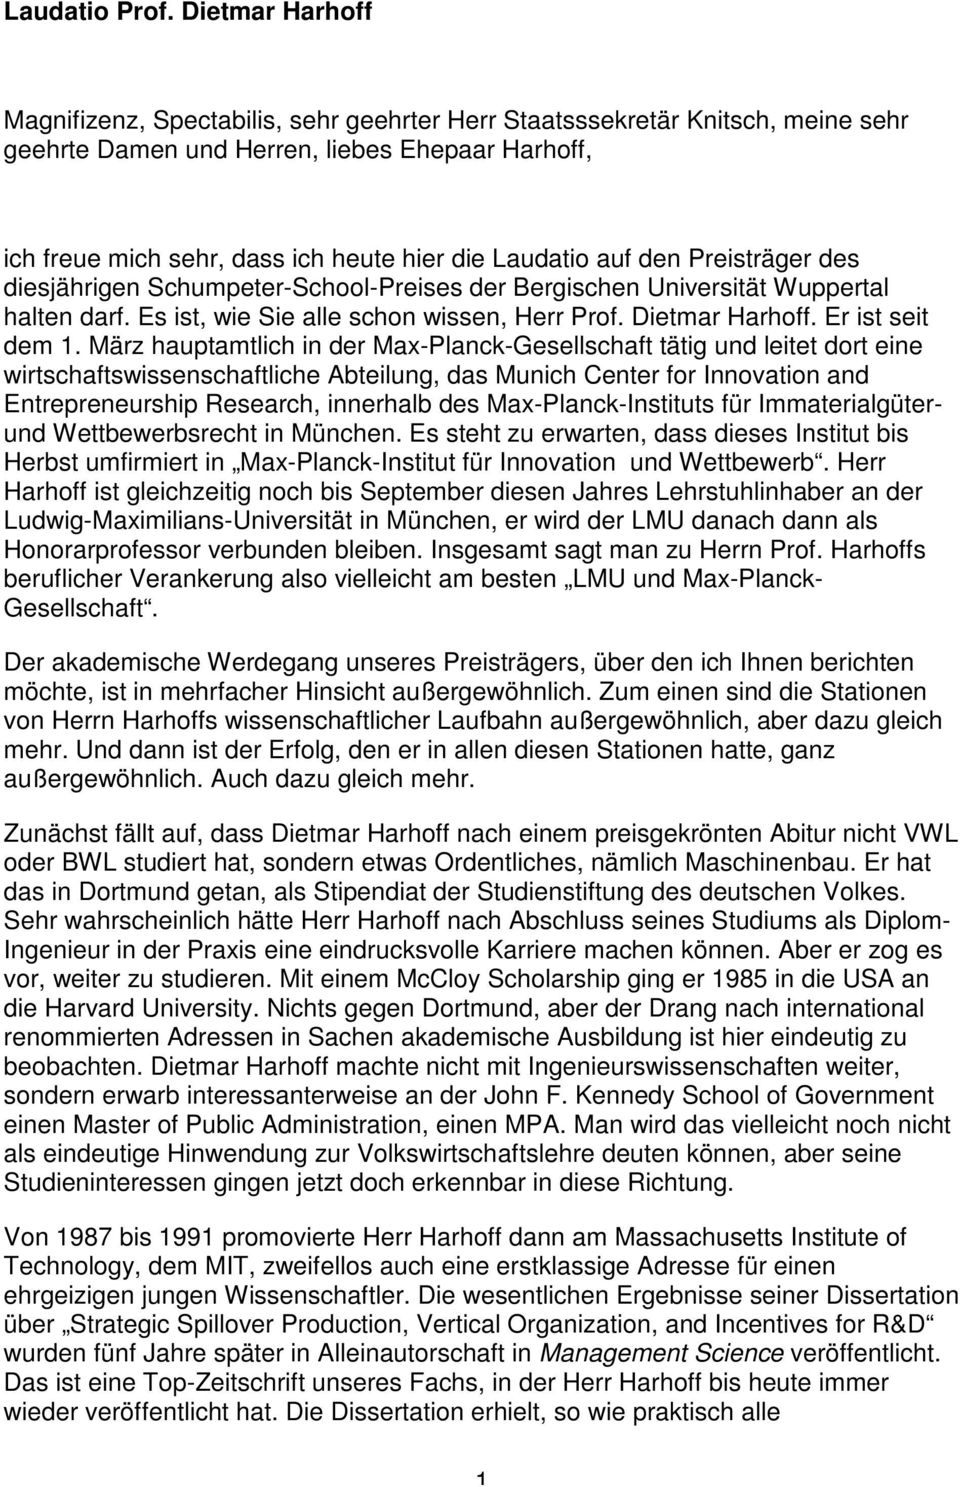 Laudatio auf den Preisträger des diesjährigen Schumpeter-School-Preises der Bergischen Universität Wuppertal halten darf. Es ist, wie Sie alle schon wissen, Herr Prof. Dietmar Harhoff.